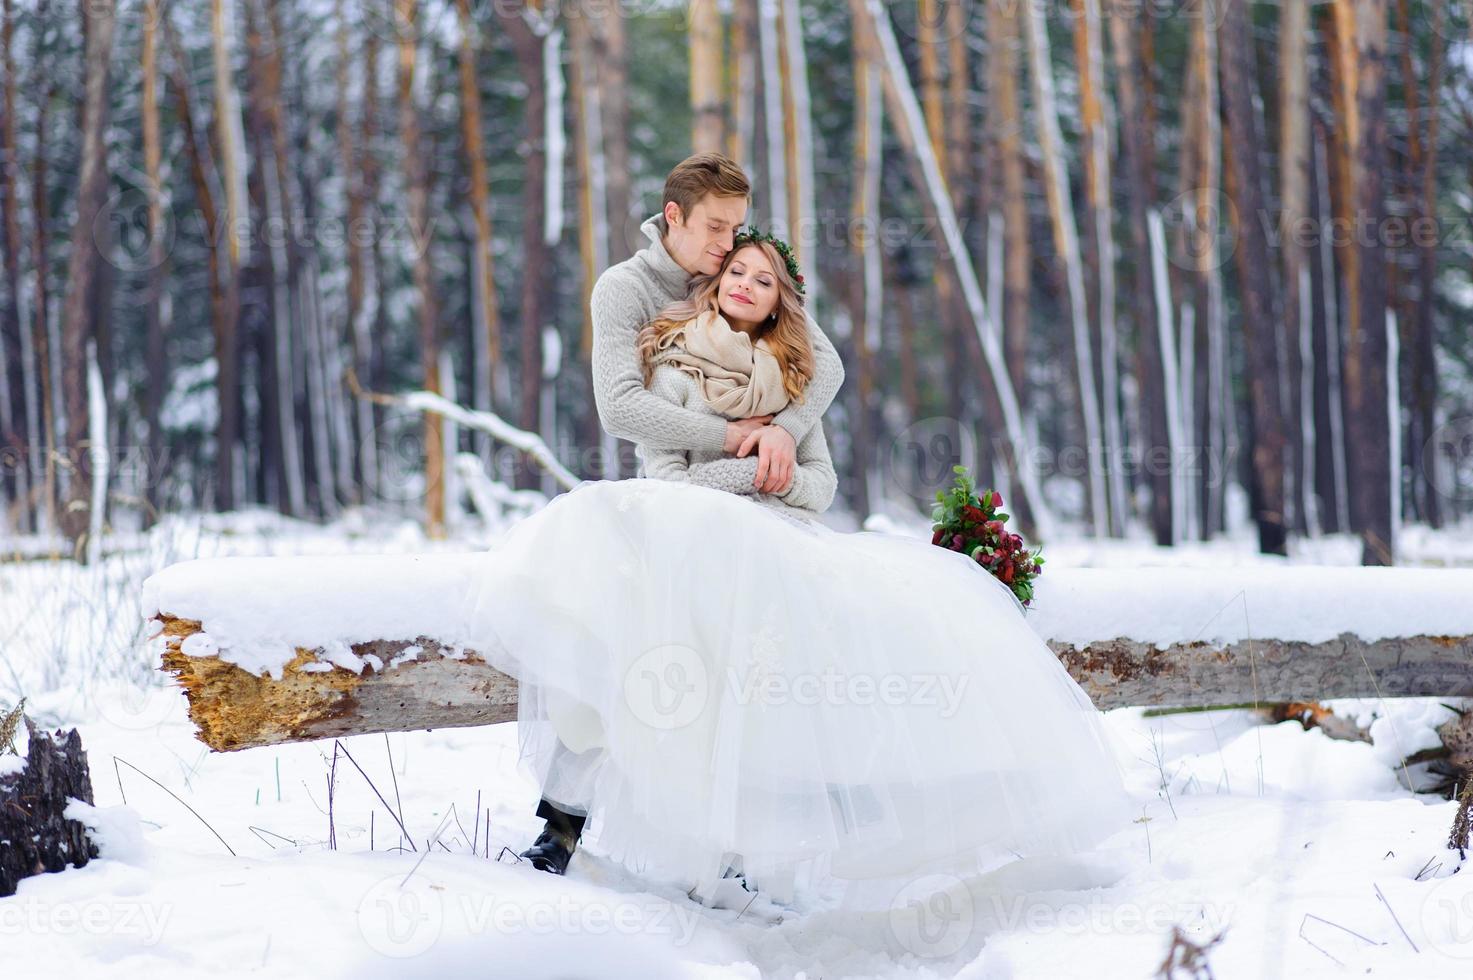 lindo casal de noivos em seu casamento de inverno foto